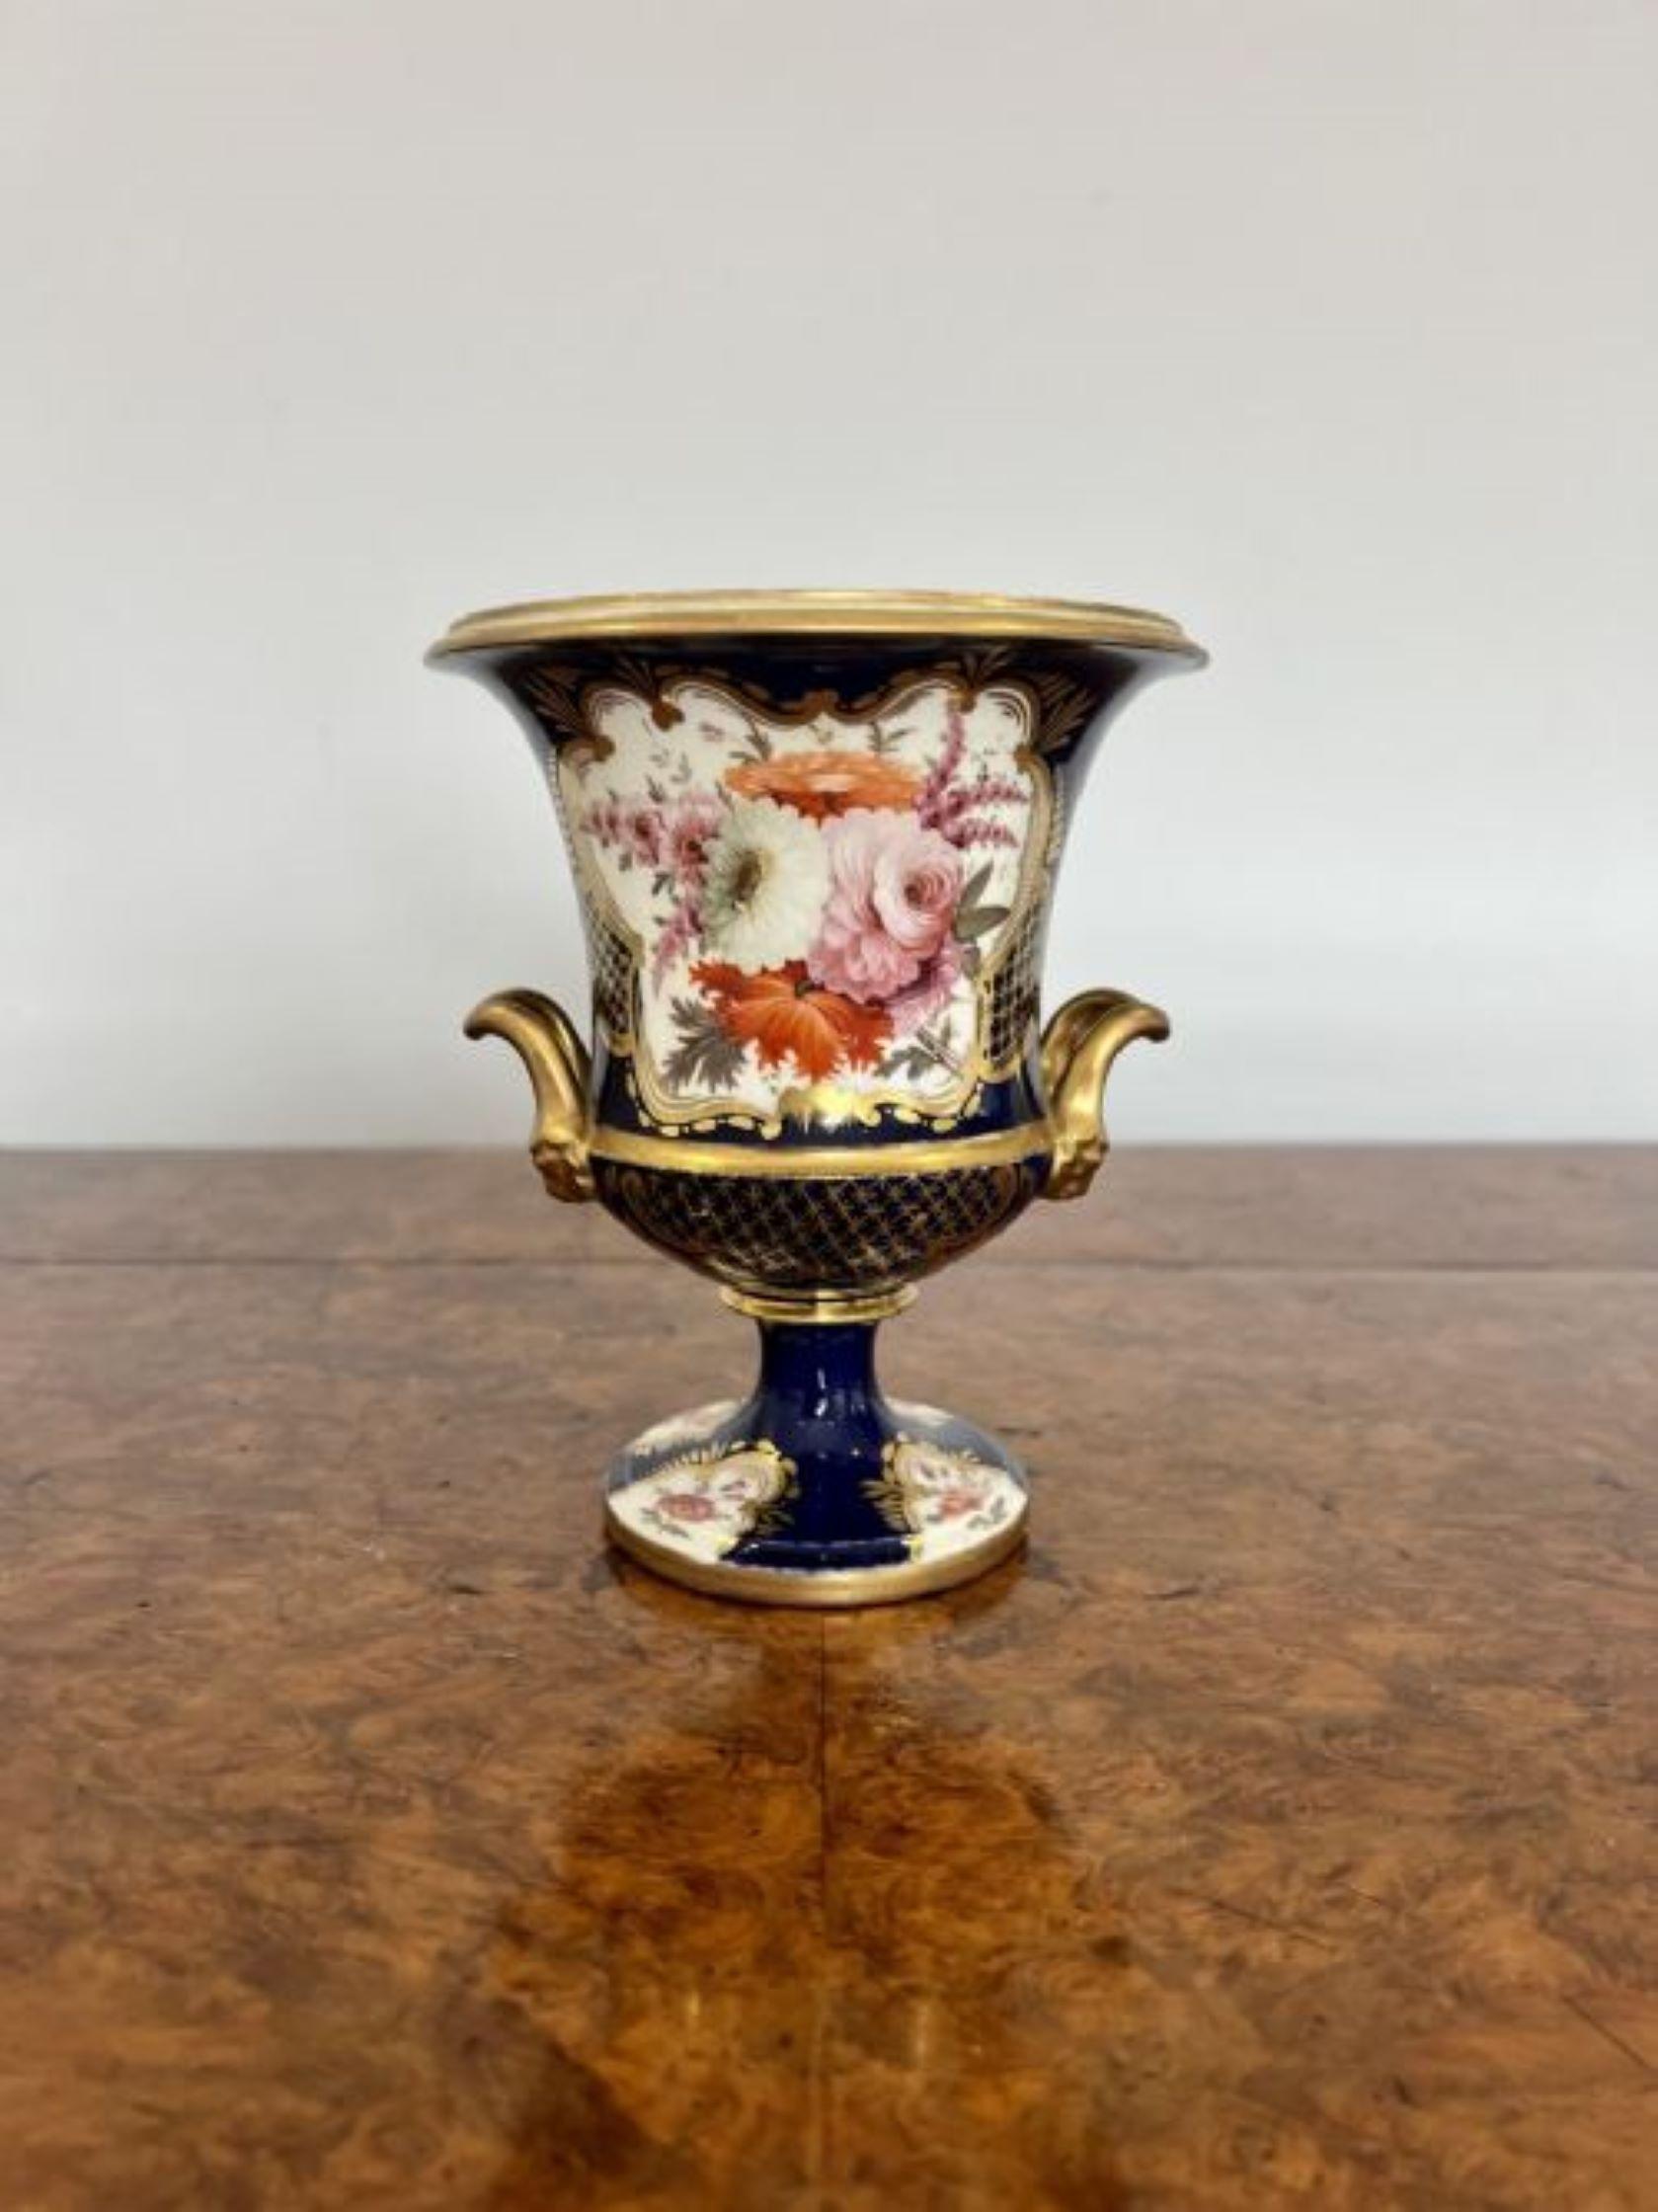 Hochwertige Vase von Spode aus dem frühen 19. Jahrhundert mit hervorragender vergoldeter Dekoration, handgemalten Blumen in wunderbaren rosa, roten, weißen und orangefarbenen Tönen auf blauem Grund, mit zwei seitlichen Tragegriffen, die auf einem